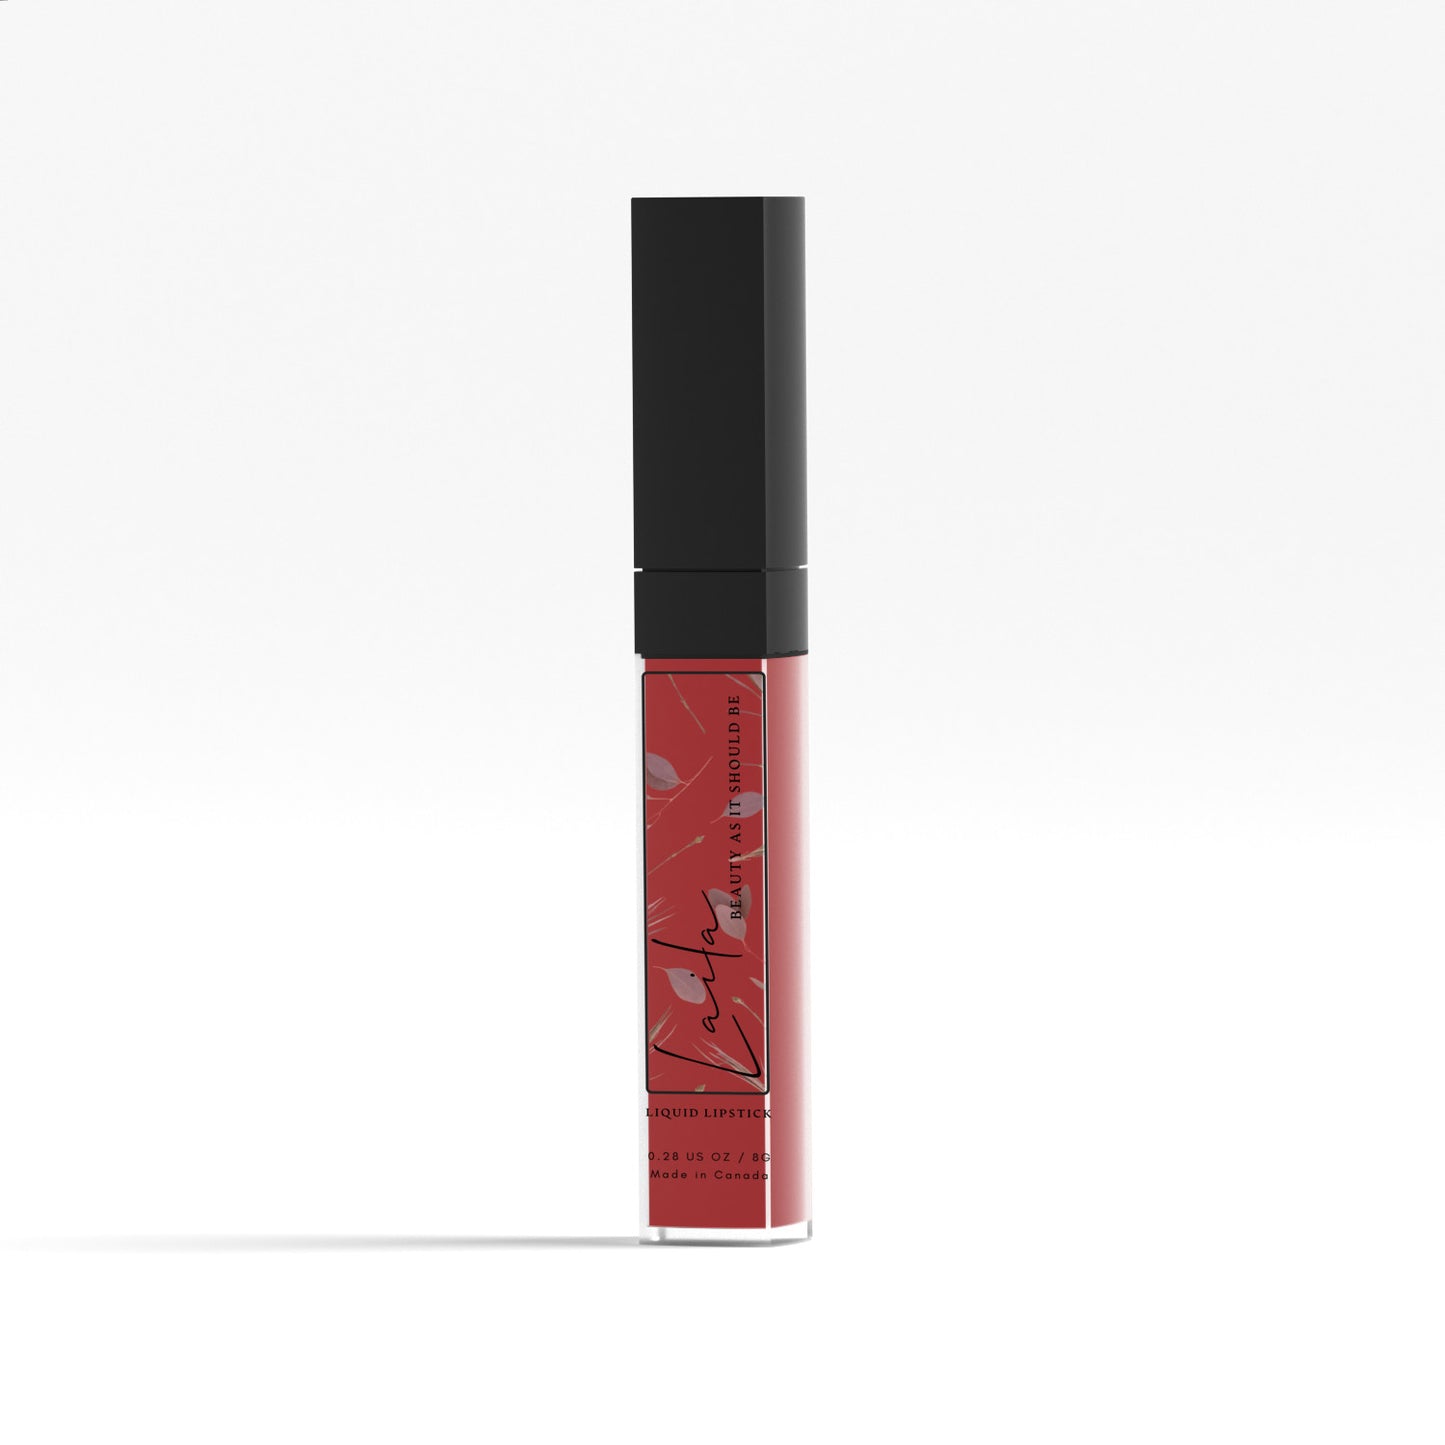 Hypnotised - Matte Liquid Lipstick Default Title Liquid Lipstick - Laila Beauty Care Liquid Lipstick